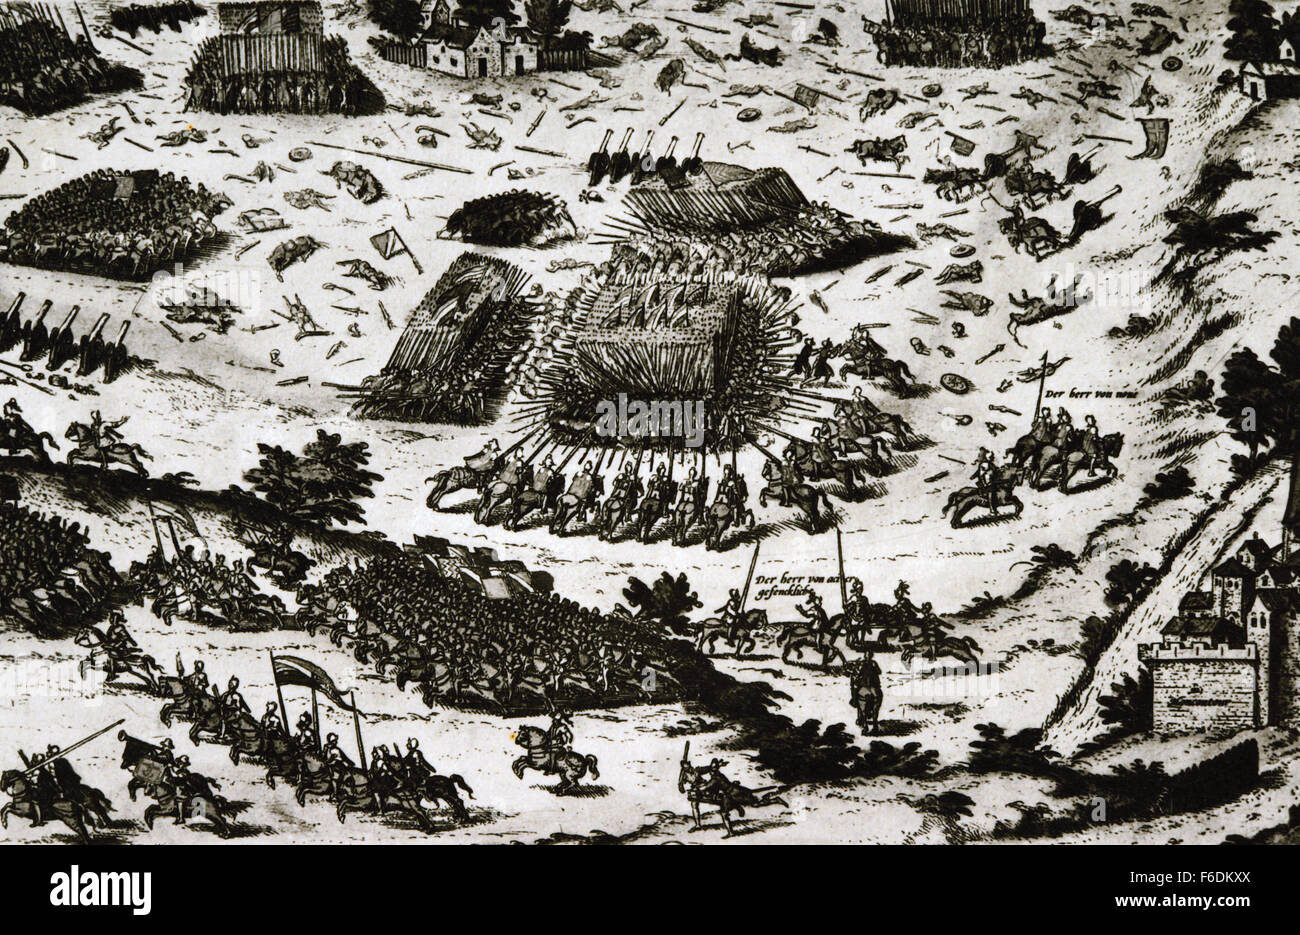 Schlacht von Moncontour, Naturgewalten 3 Oktober 1569 zwischen der katholischen König Charles IX von Frankreich und die Hugenotten während des Dritten Krieges (1568-1570) der französischen Kriege der Religion. Gravur. Stockfoto